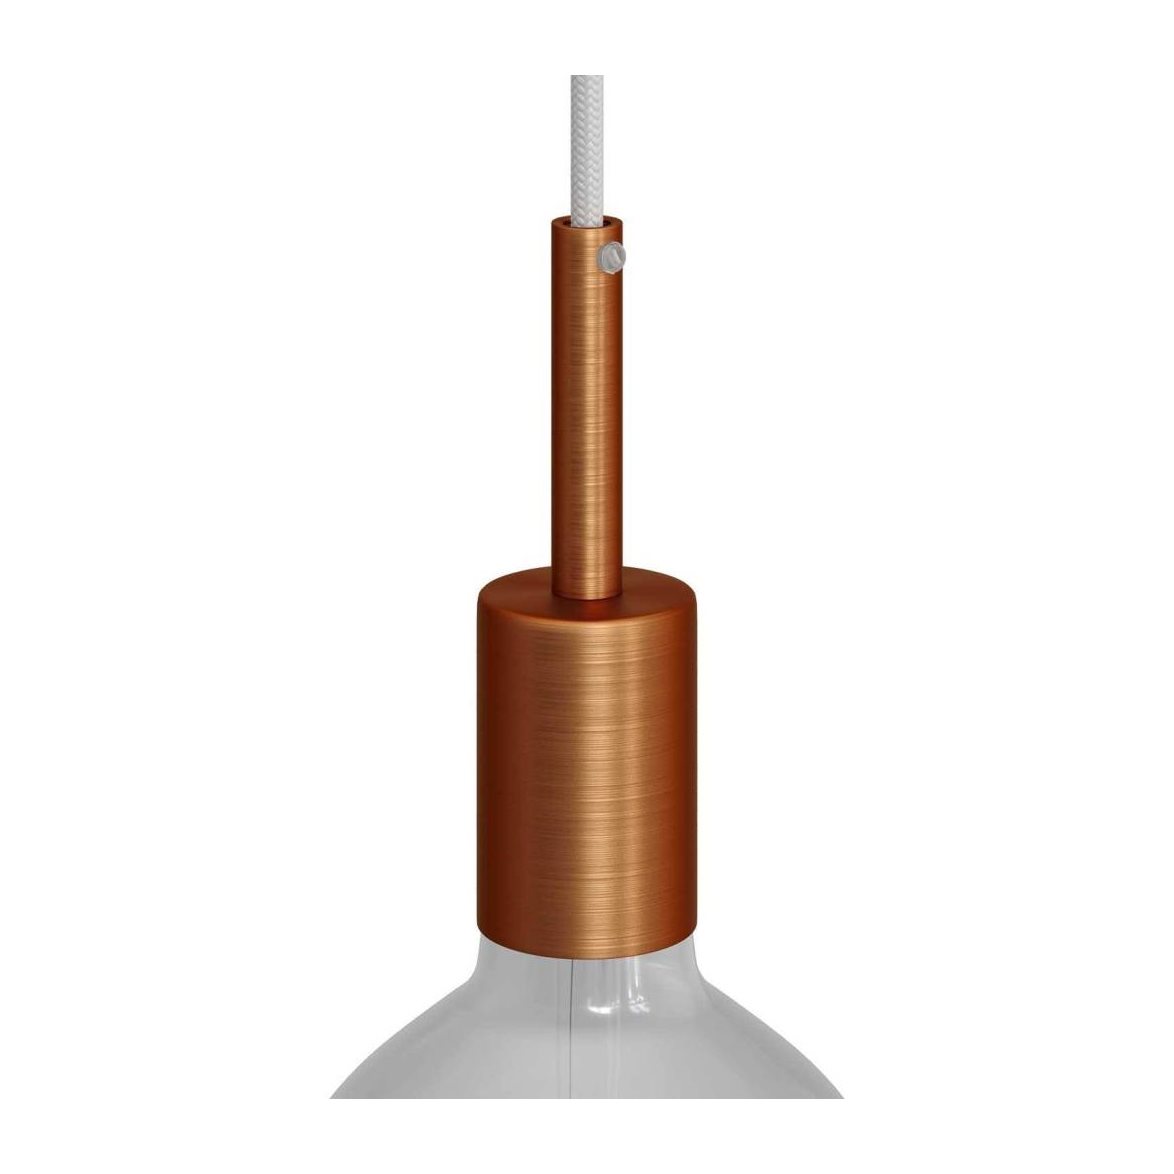 Kit cylindrisk lamphållare E27 i metall med 7 cm lång dravaglastare satin koppar